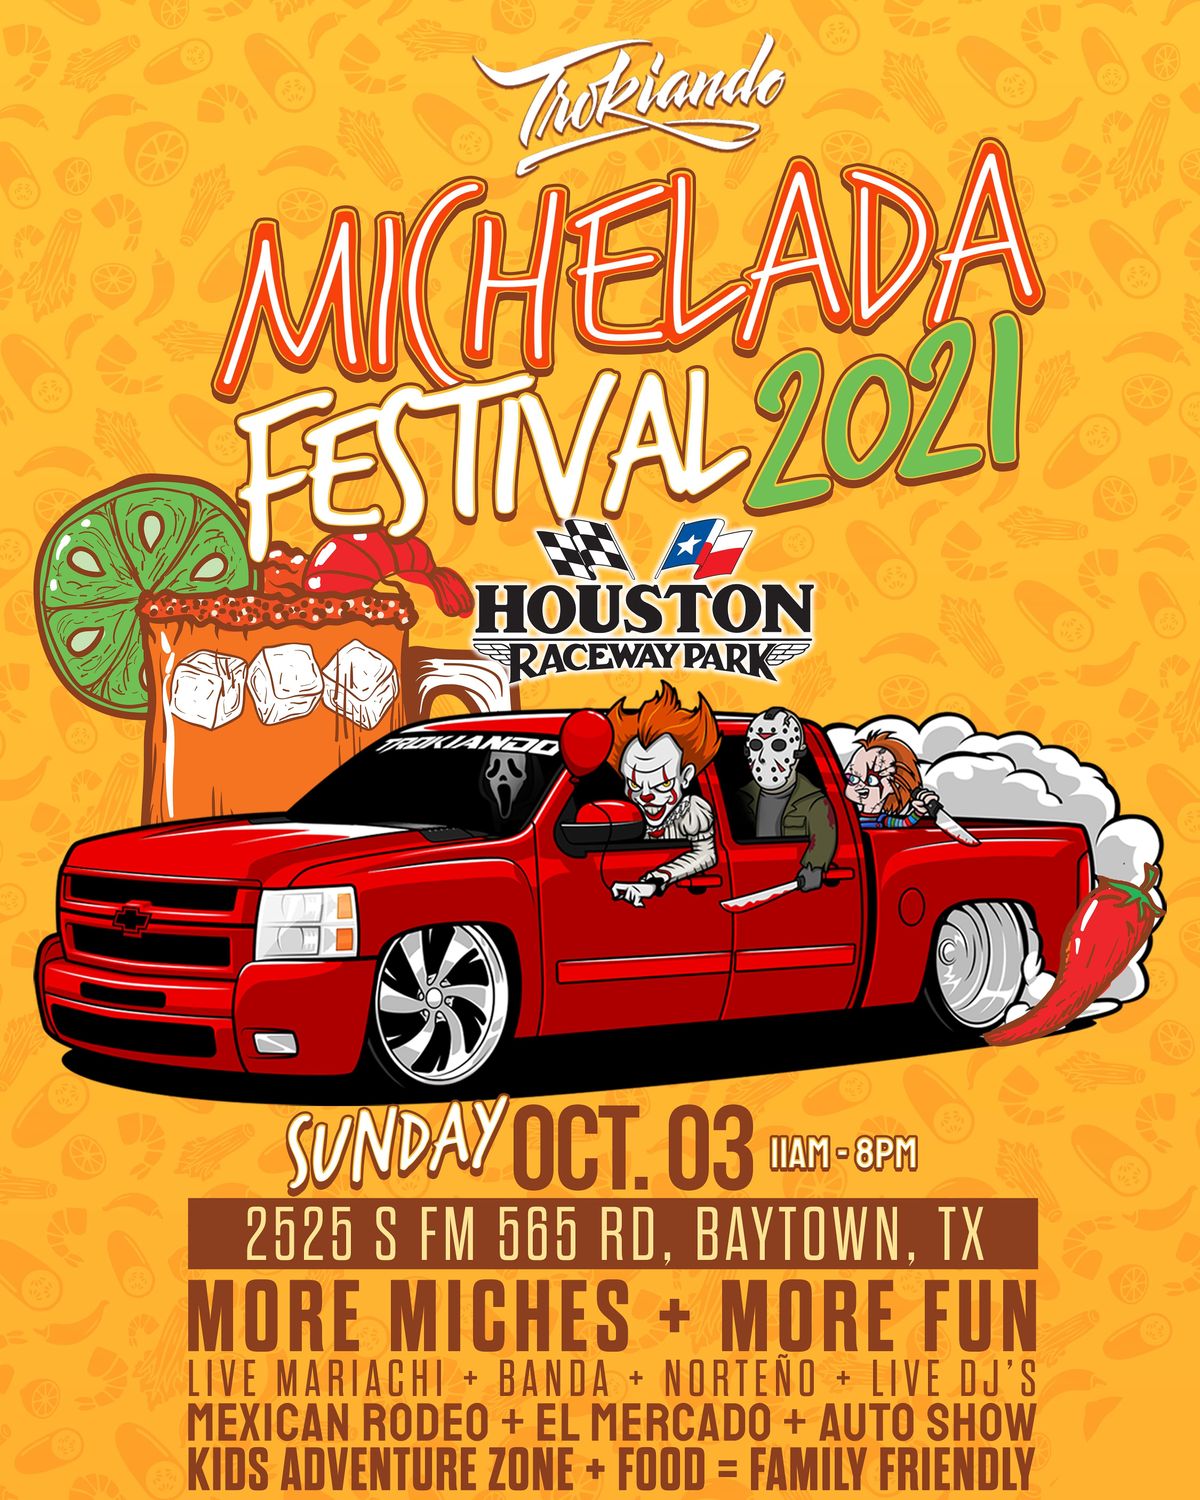 Michelada Fest 2021 Houston Raceway, Baytown, TX October 3, 2021